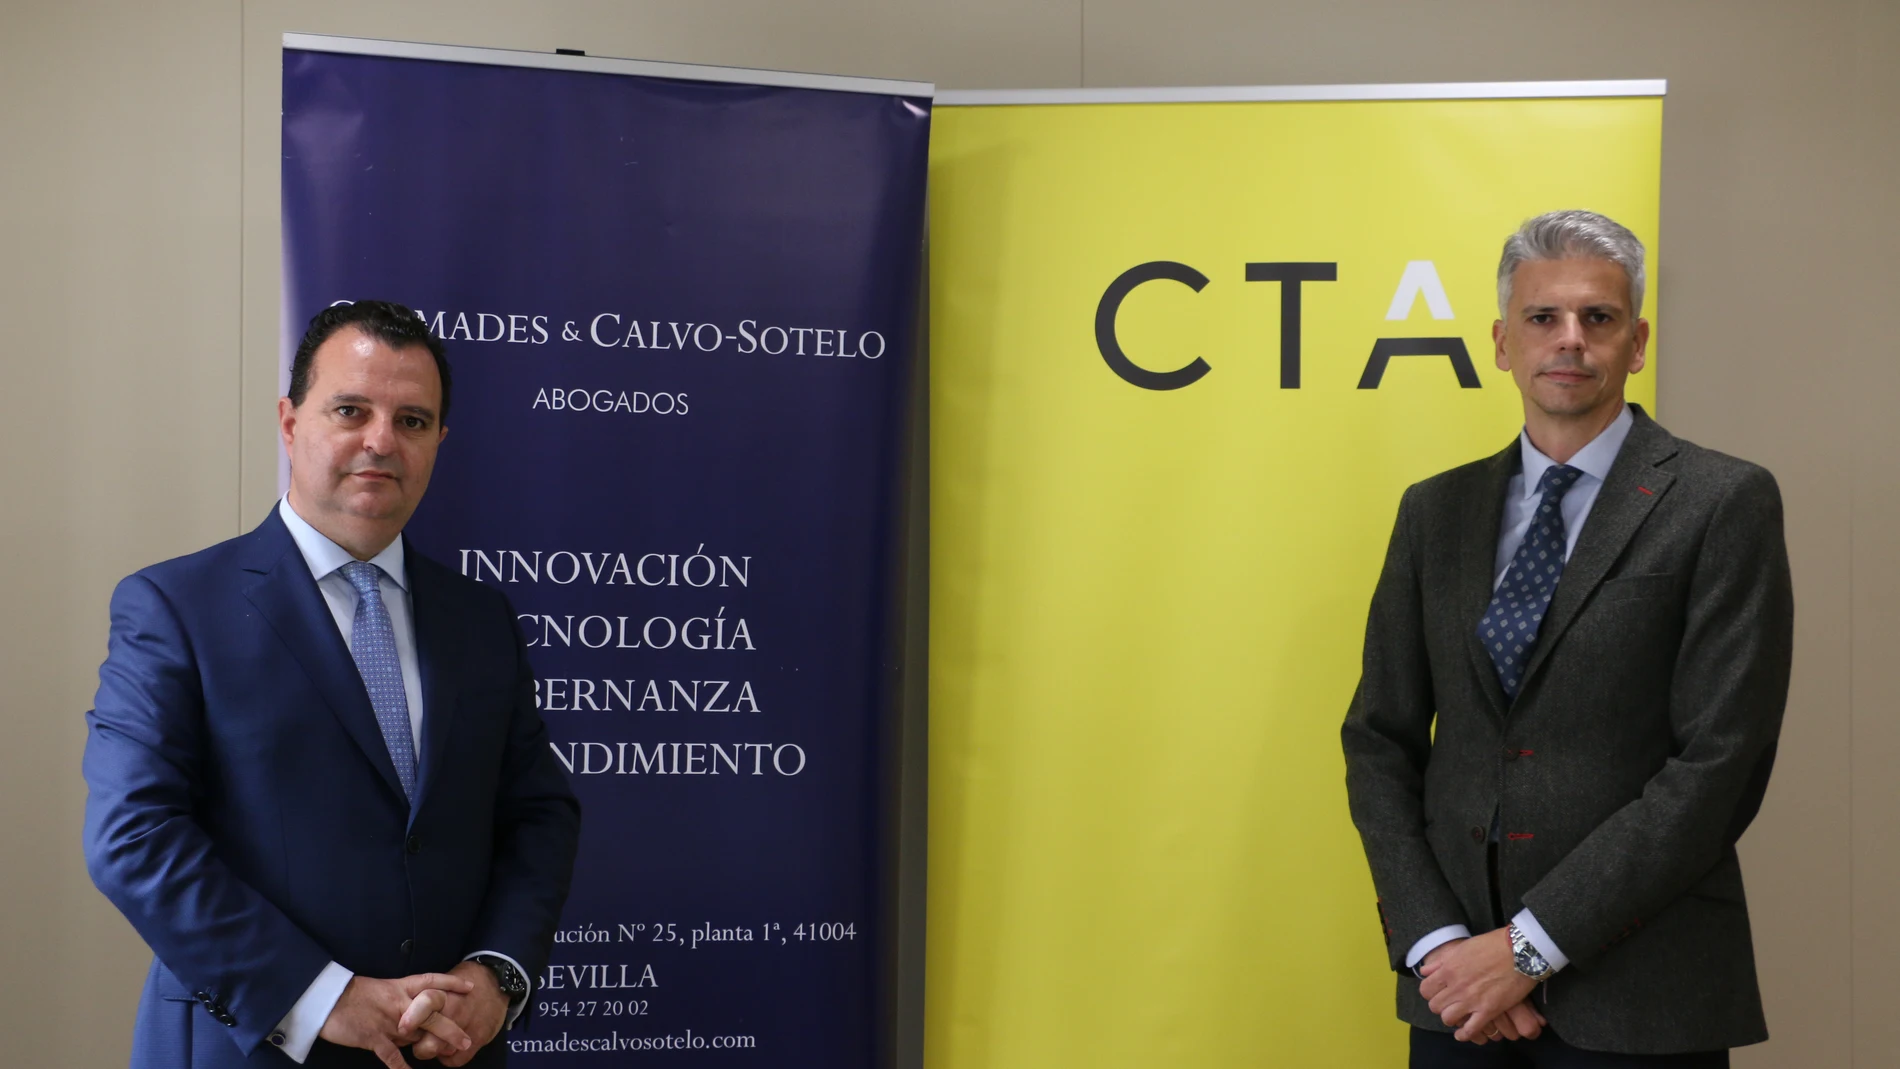 El socio director de Cremades & Calvo-Sotelo, Francisco José Fernández, y el director de Desarrollo de Negocio de CTA, David Páez